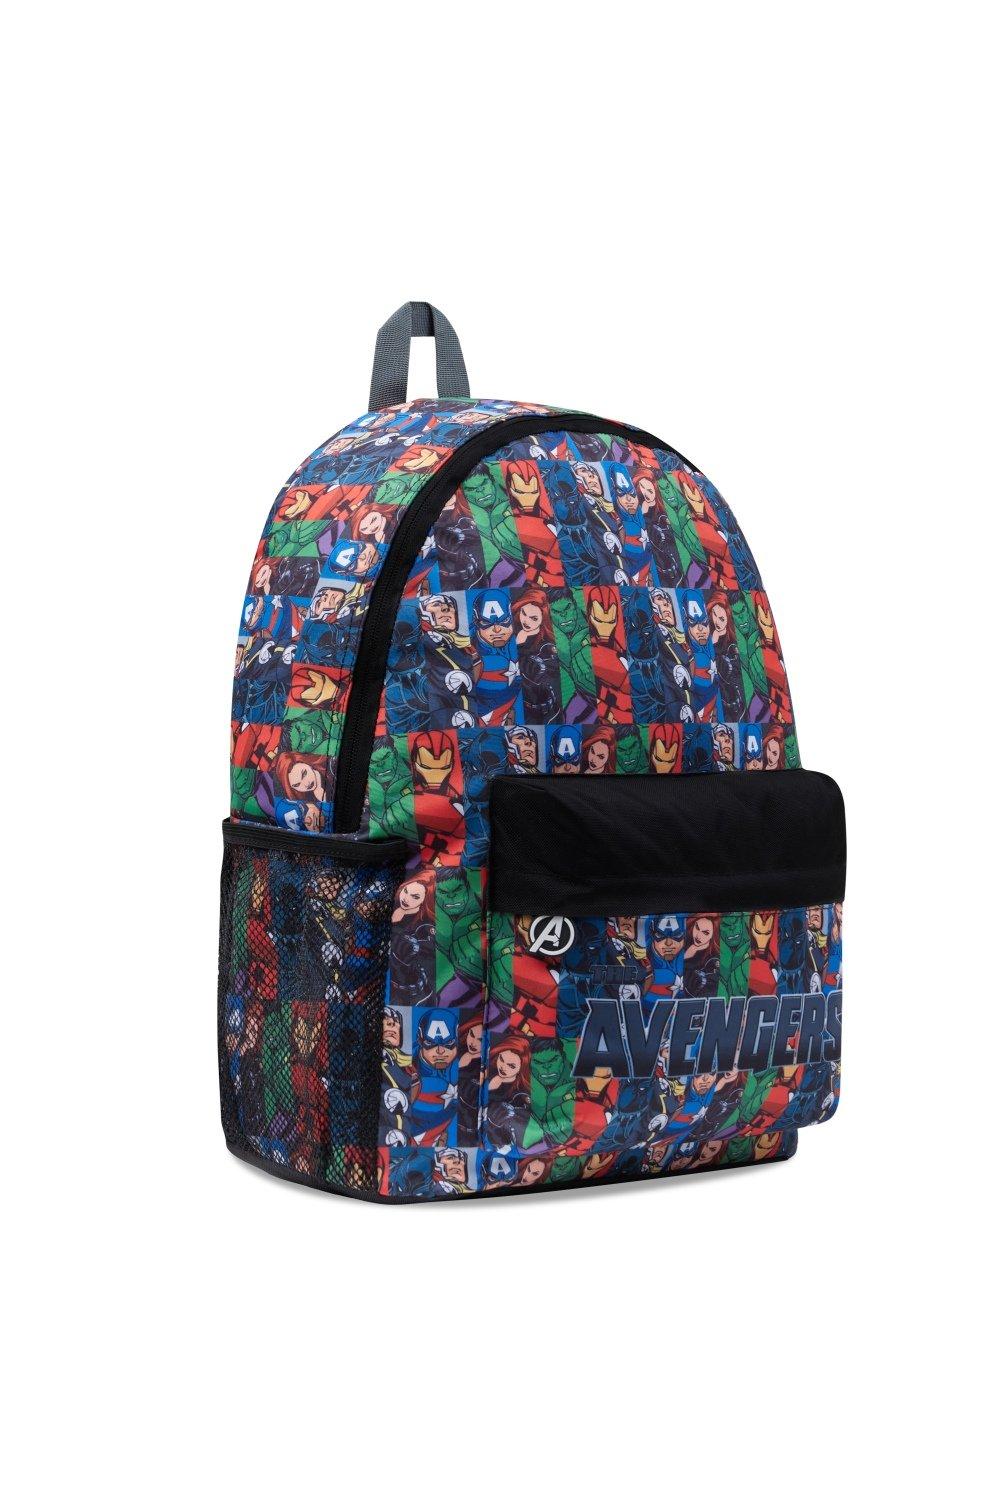 Рюкзак Мстителей большой вместимости Marvel, мультиколор детская школьная сумка для детского сада рюкзак для мальчиков с мультипликационным рисунком милый водонепроницаемый рюкзак для начально